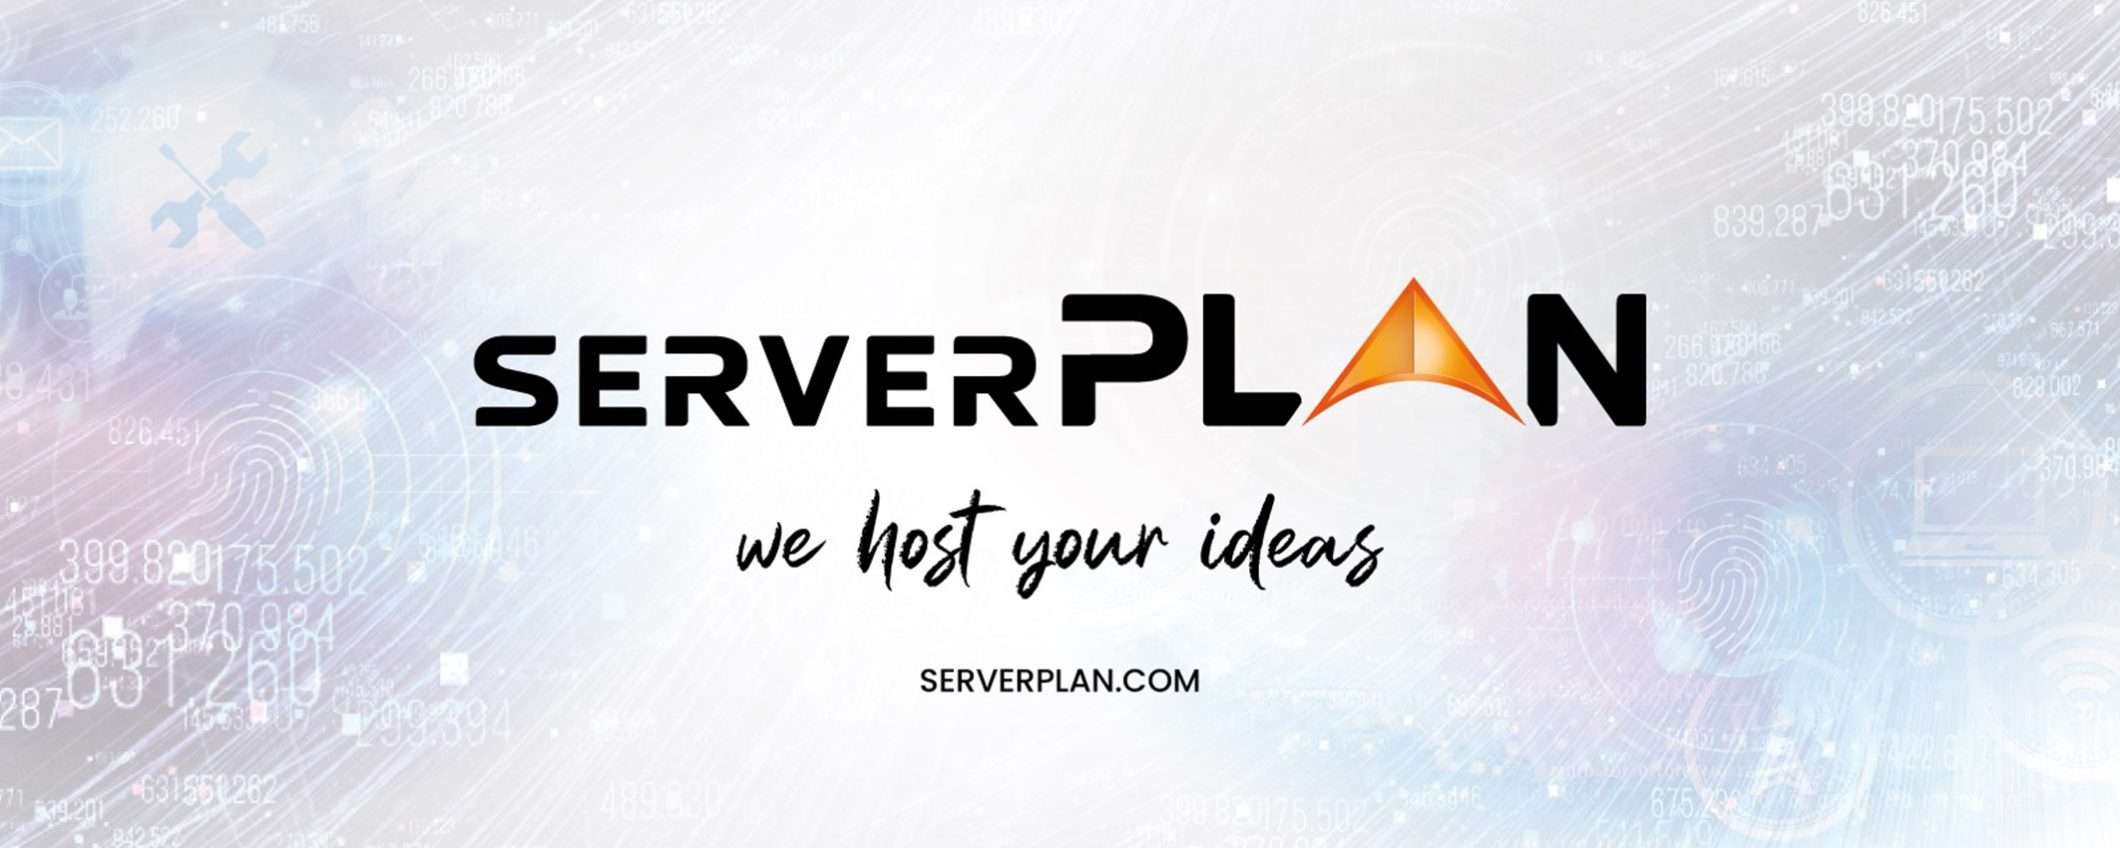 Avvia il tuo nuovo progetto online a metà prezzo con Serverplan